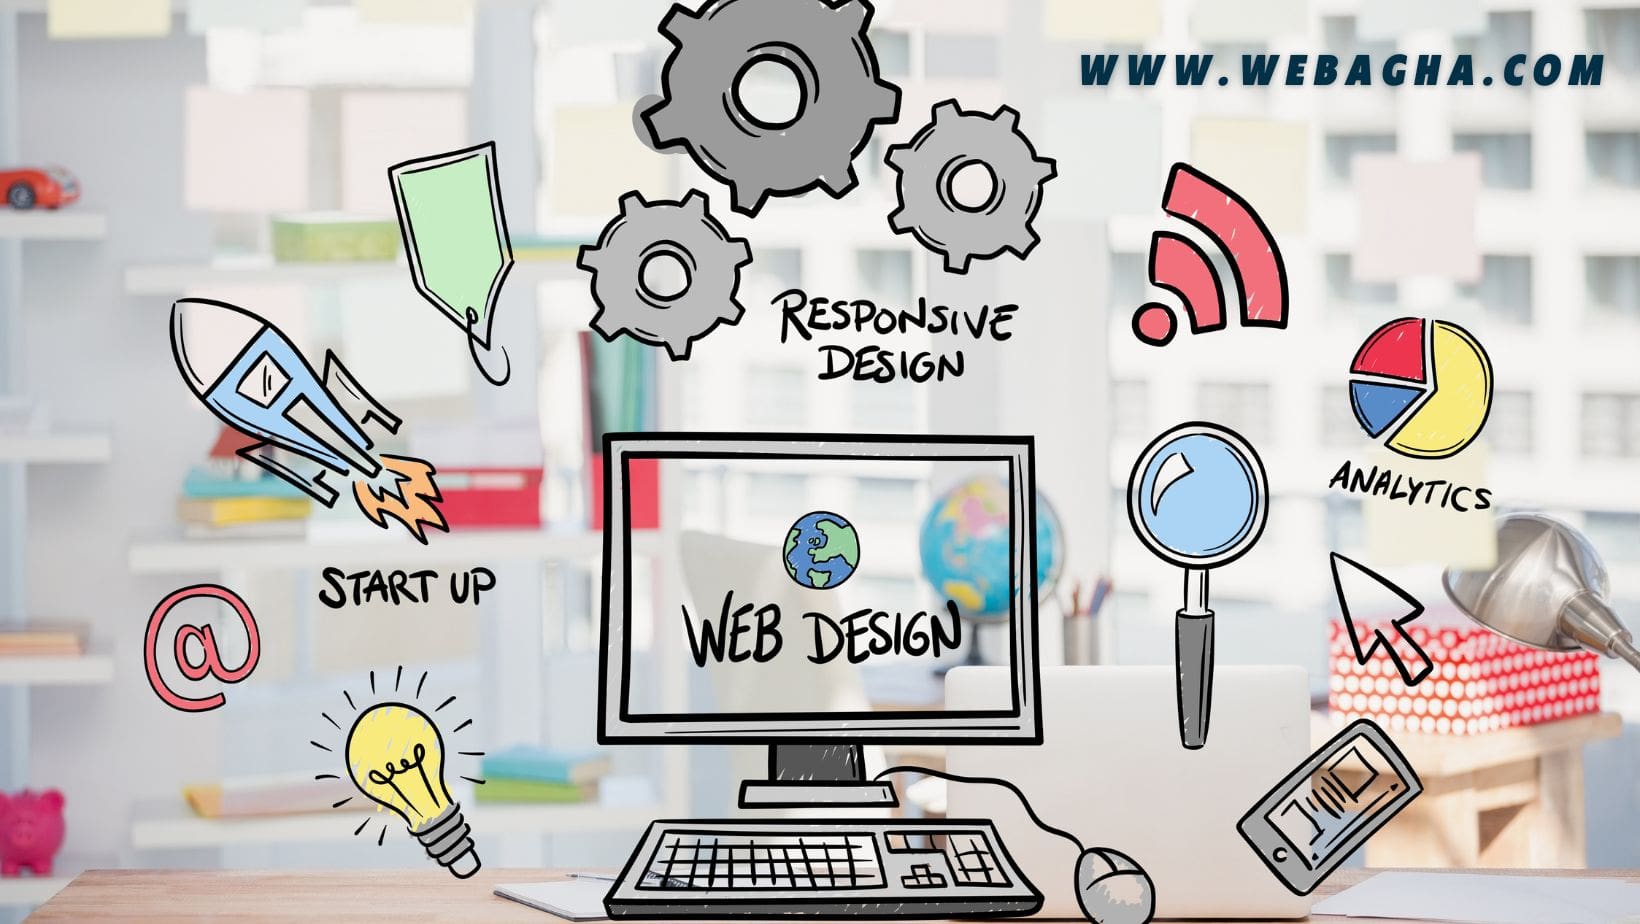 web design webagha